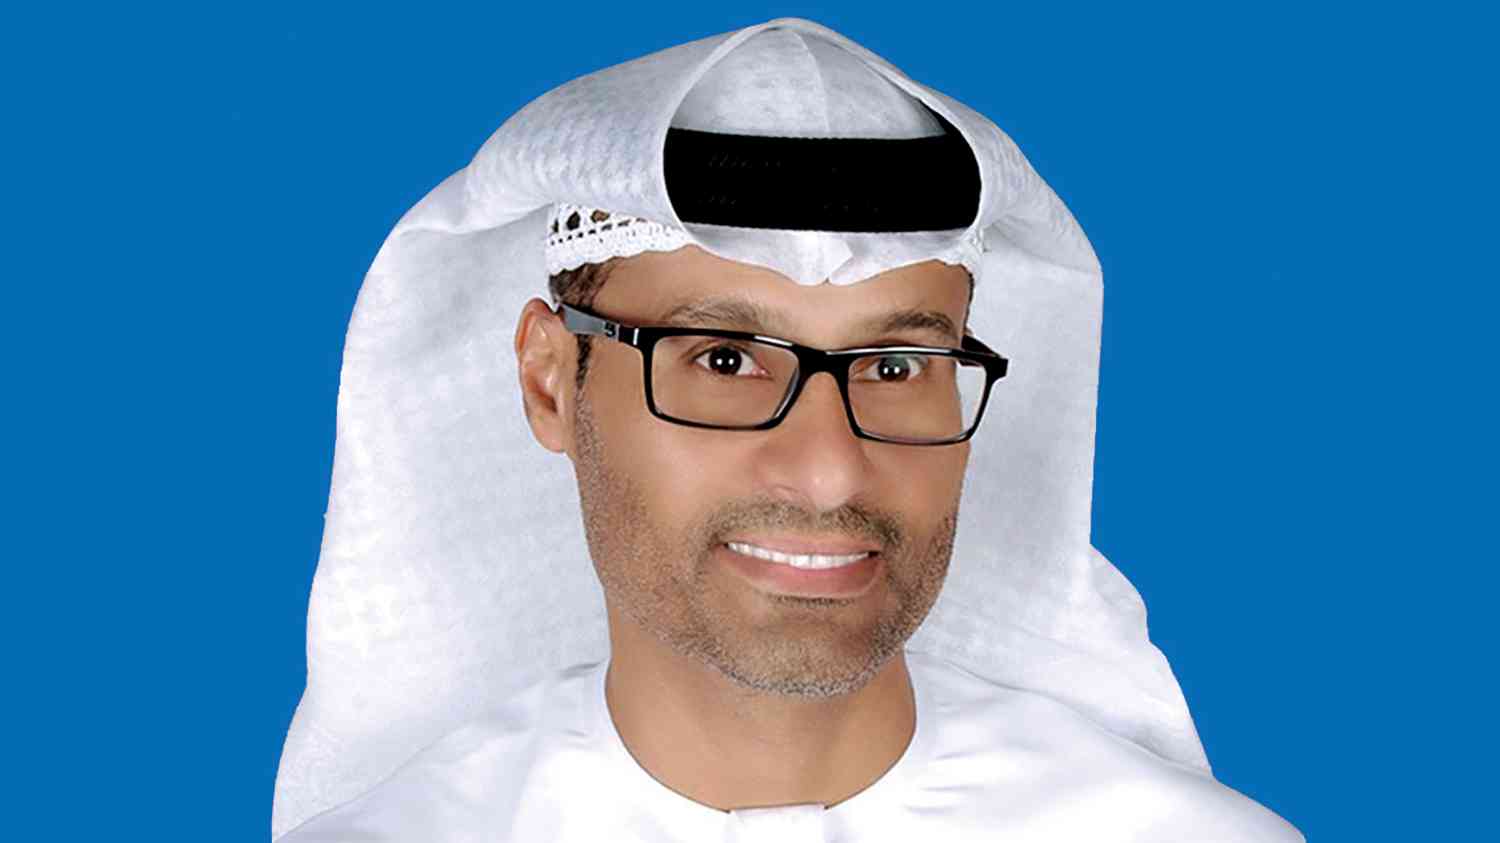 محمد الكويتي: تأمين المنظومات غير المأهولة وذاتية القيادة يضمن تطورها وأداء مهامها بشكل آمن